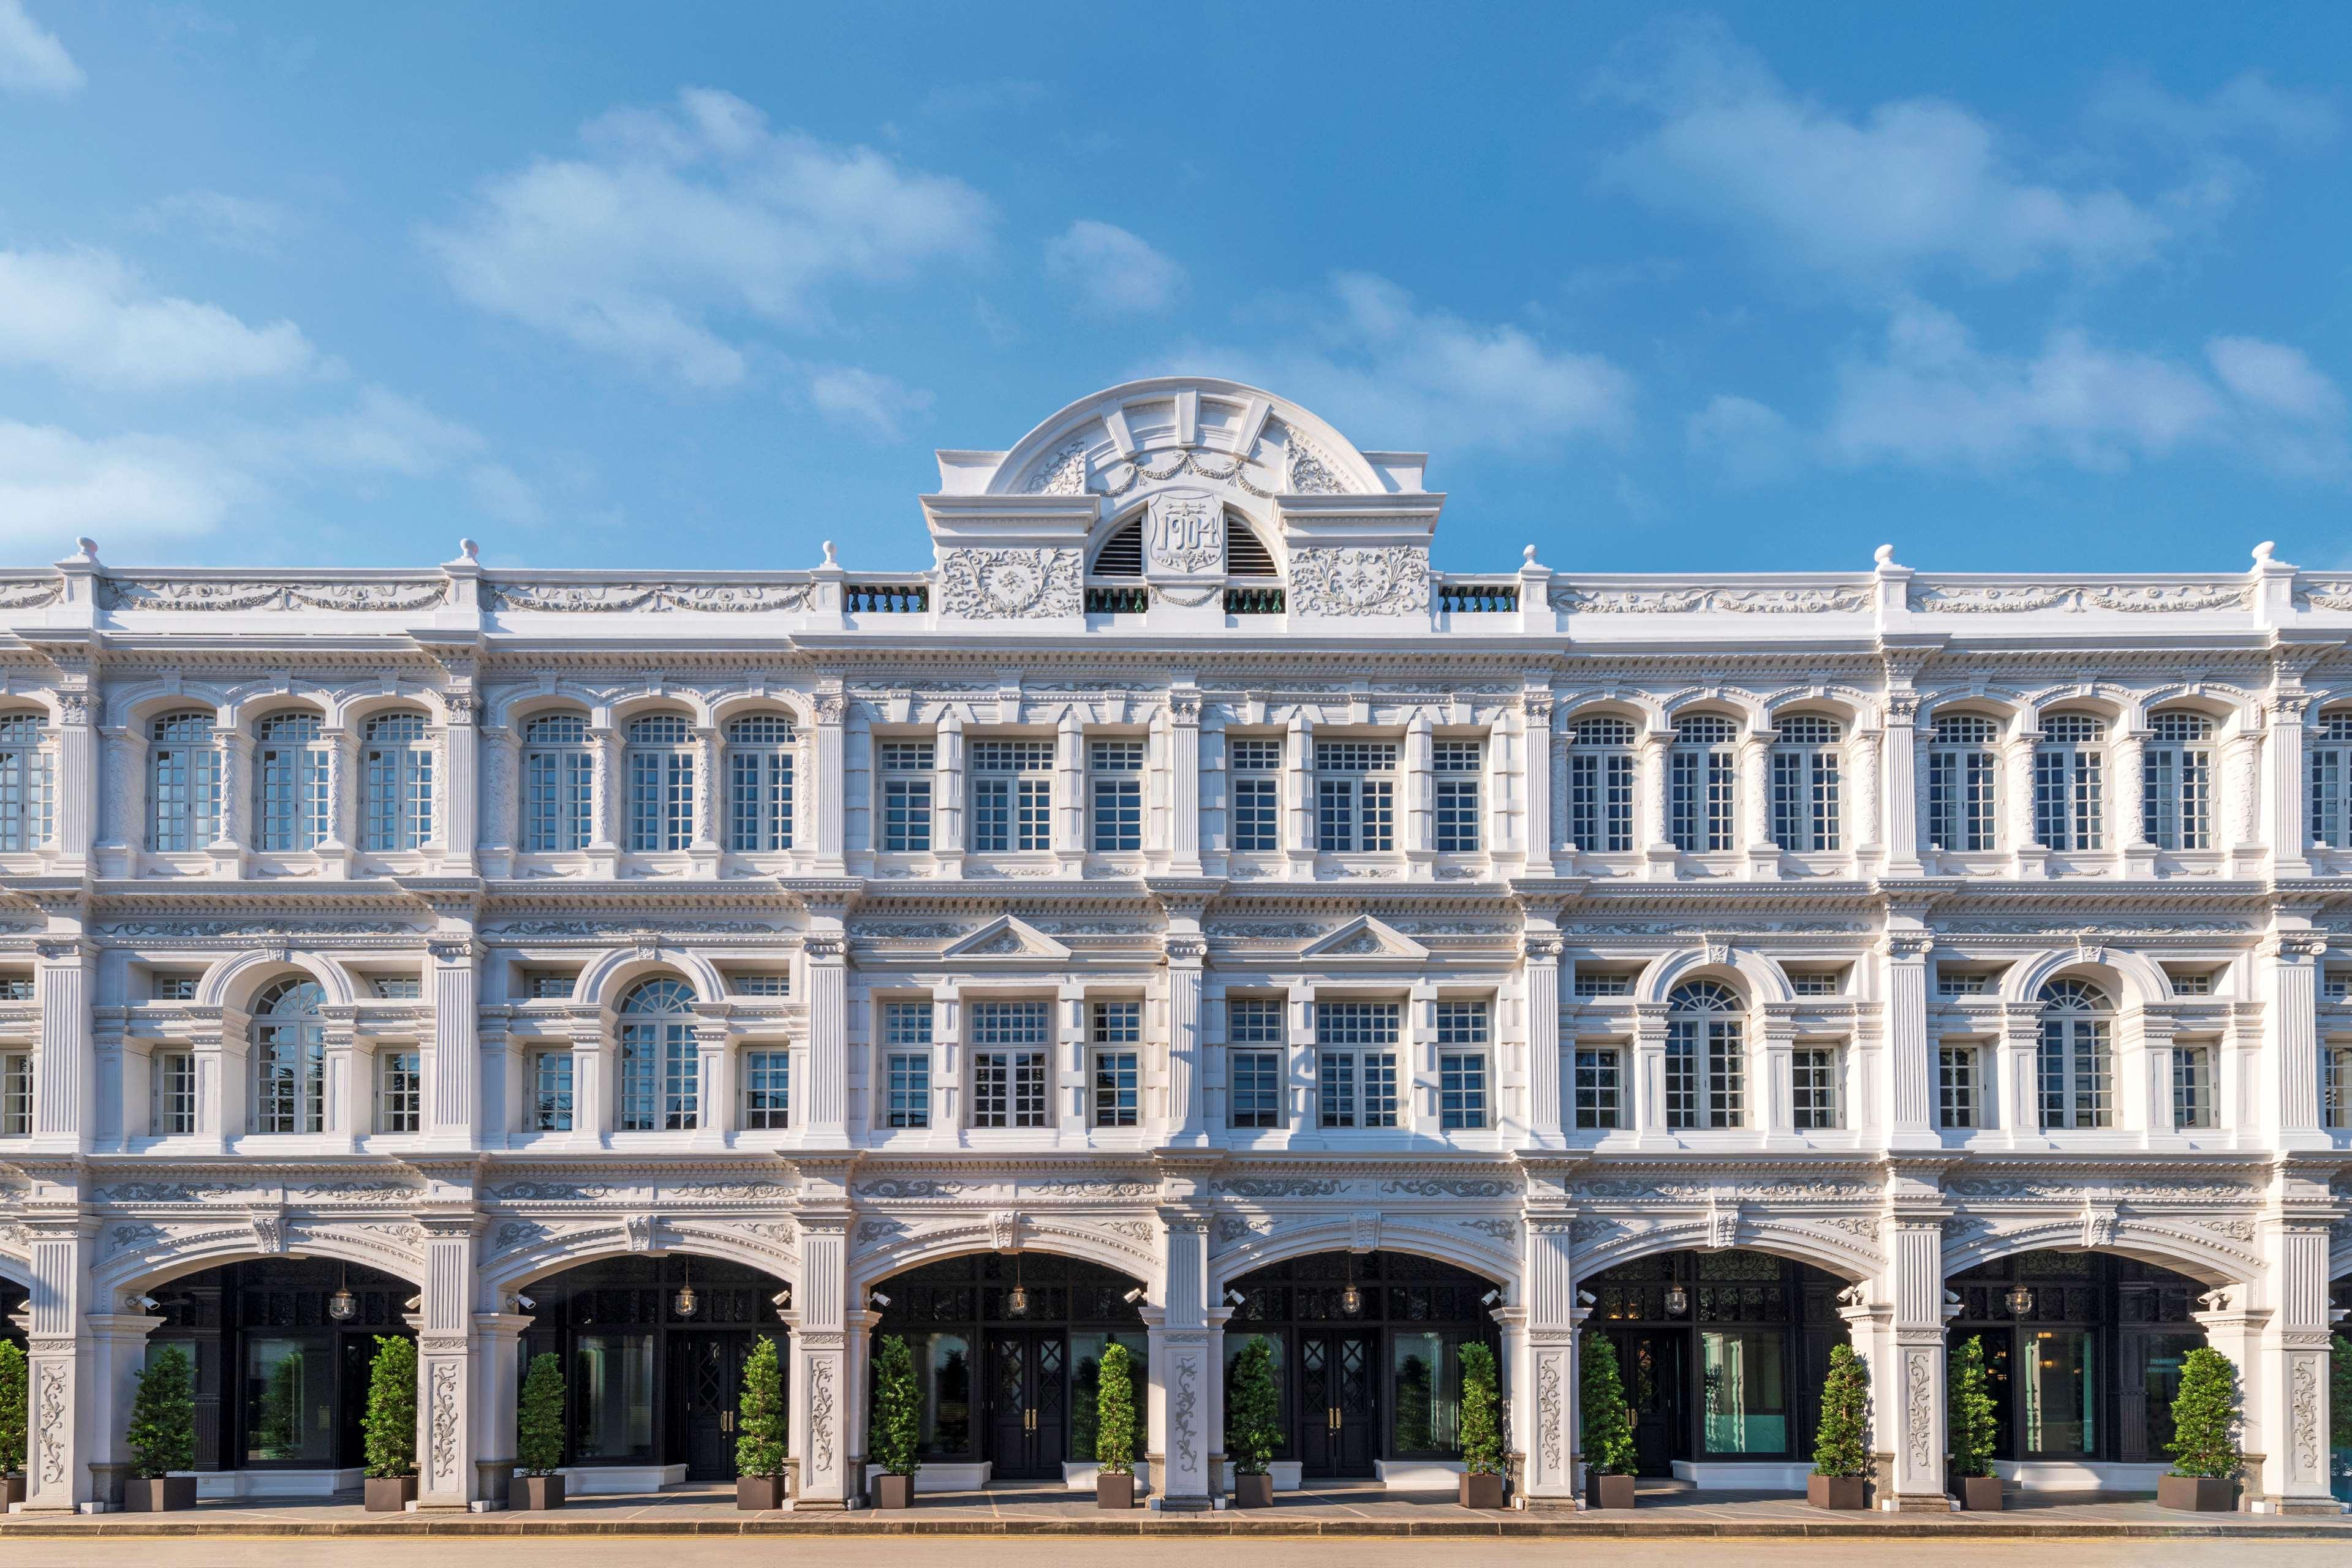 The Capitol Kempinski Hotel Szingapúr Kültér fotó